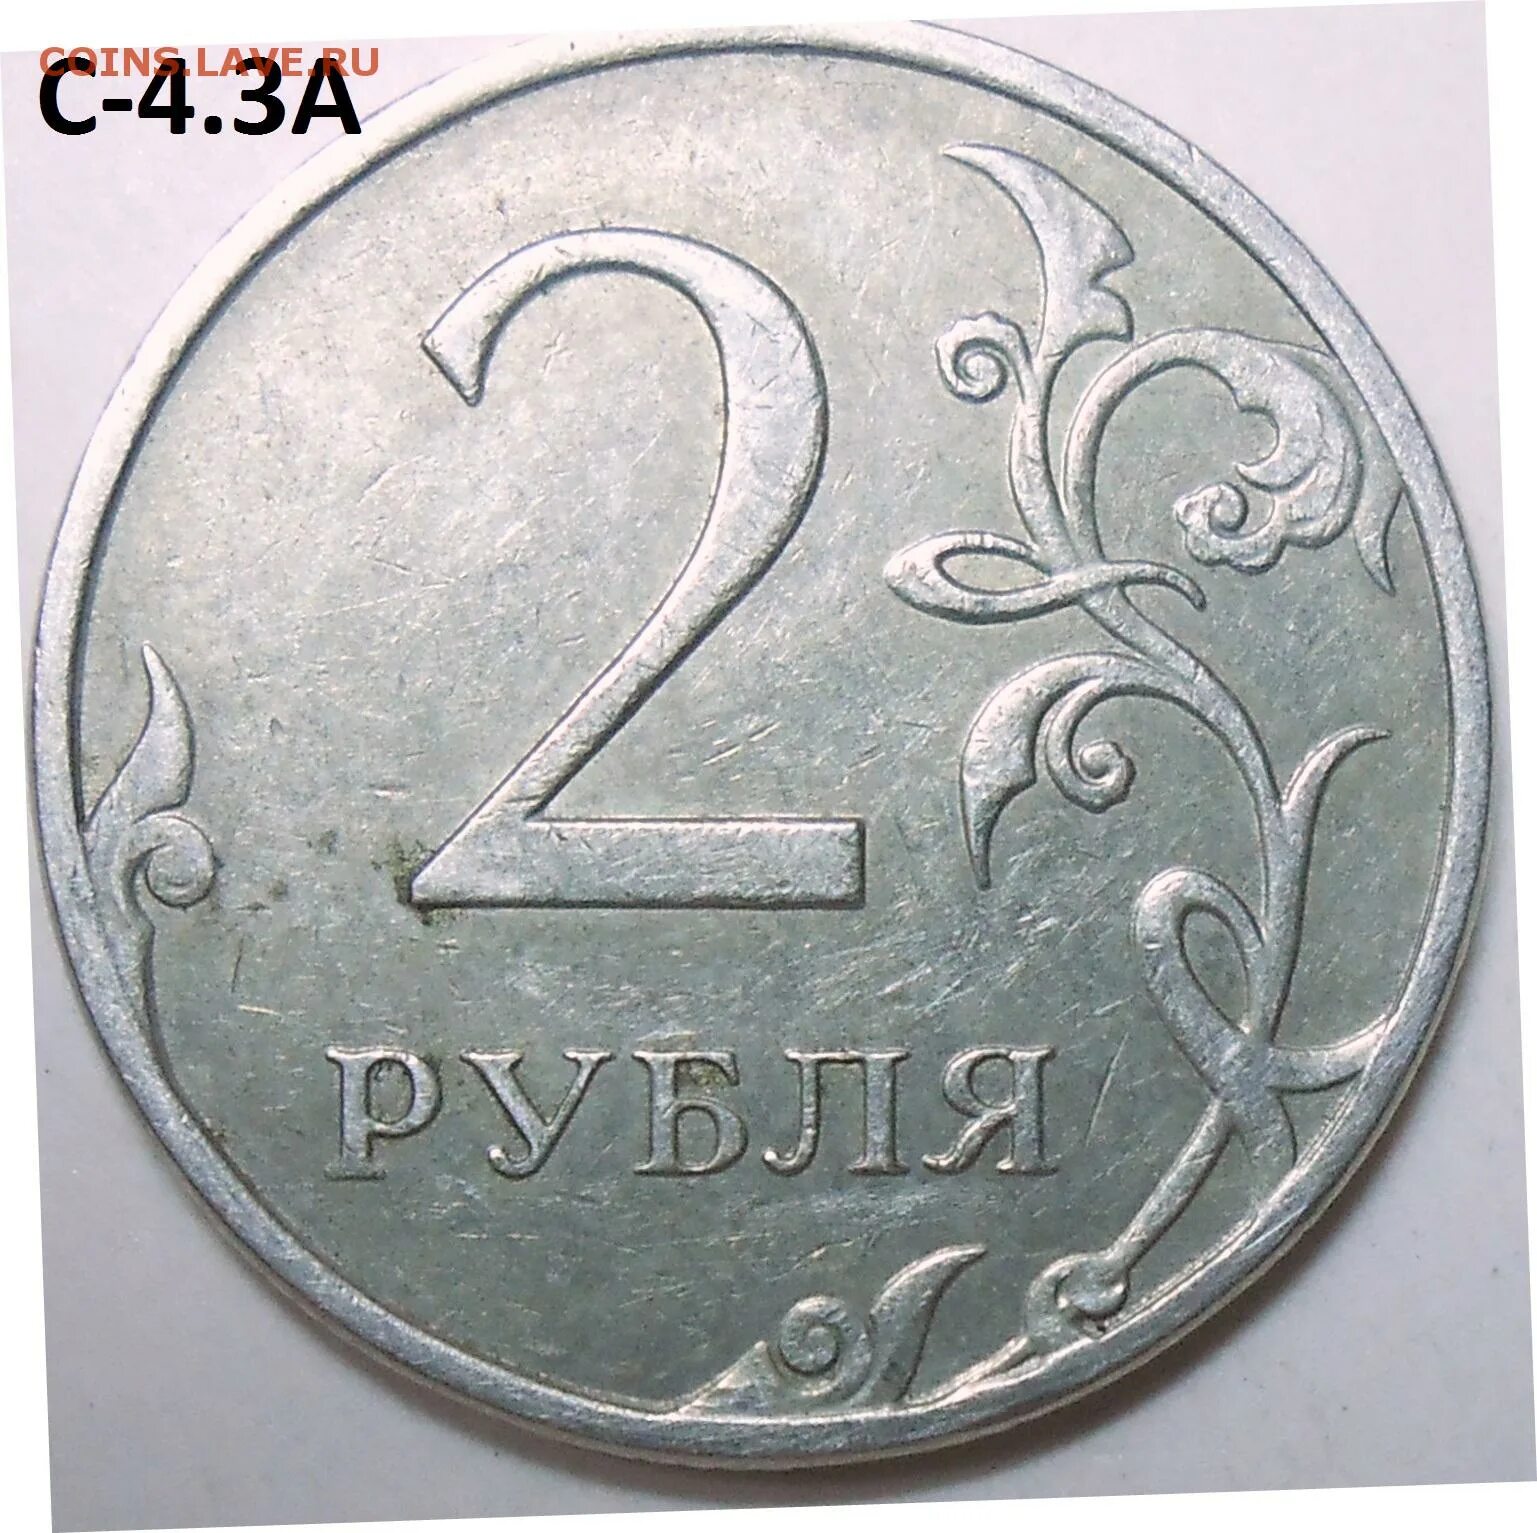 75 рублей килограмм. 2 Рубля 1997 ММД. 2 Руб 1997 ММД. 2 Рубля 1997 СПДМ золото. Редкий ли 2 рубль 1997.